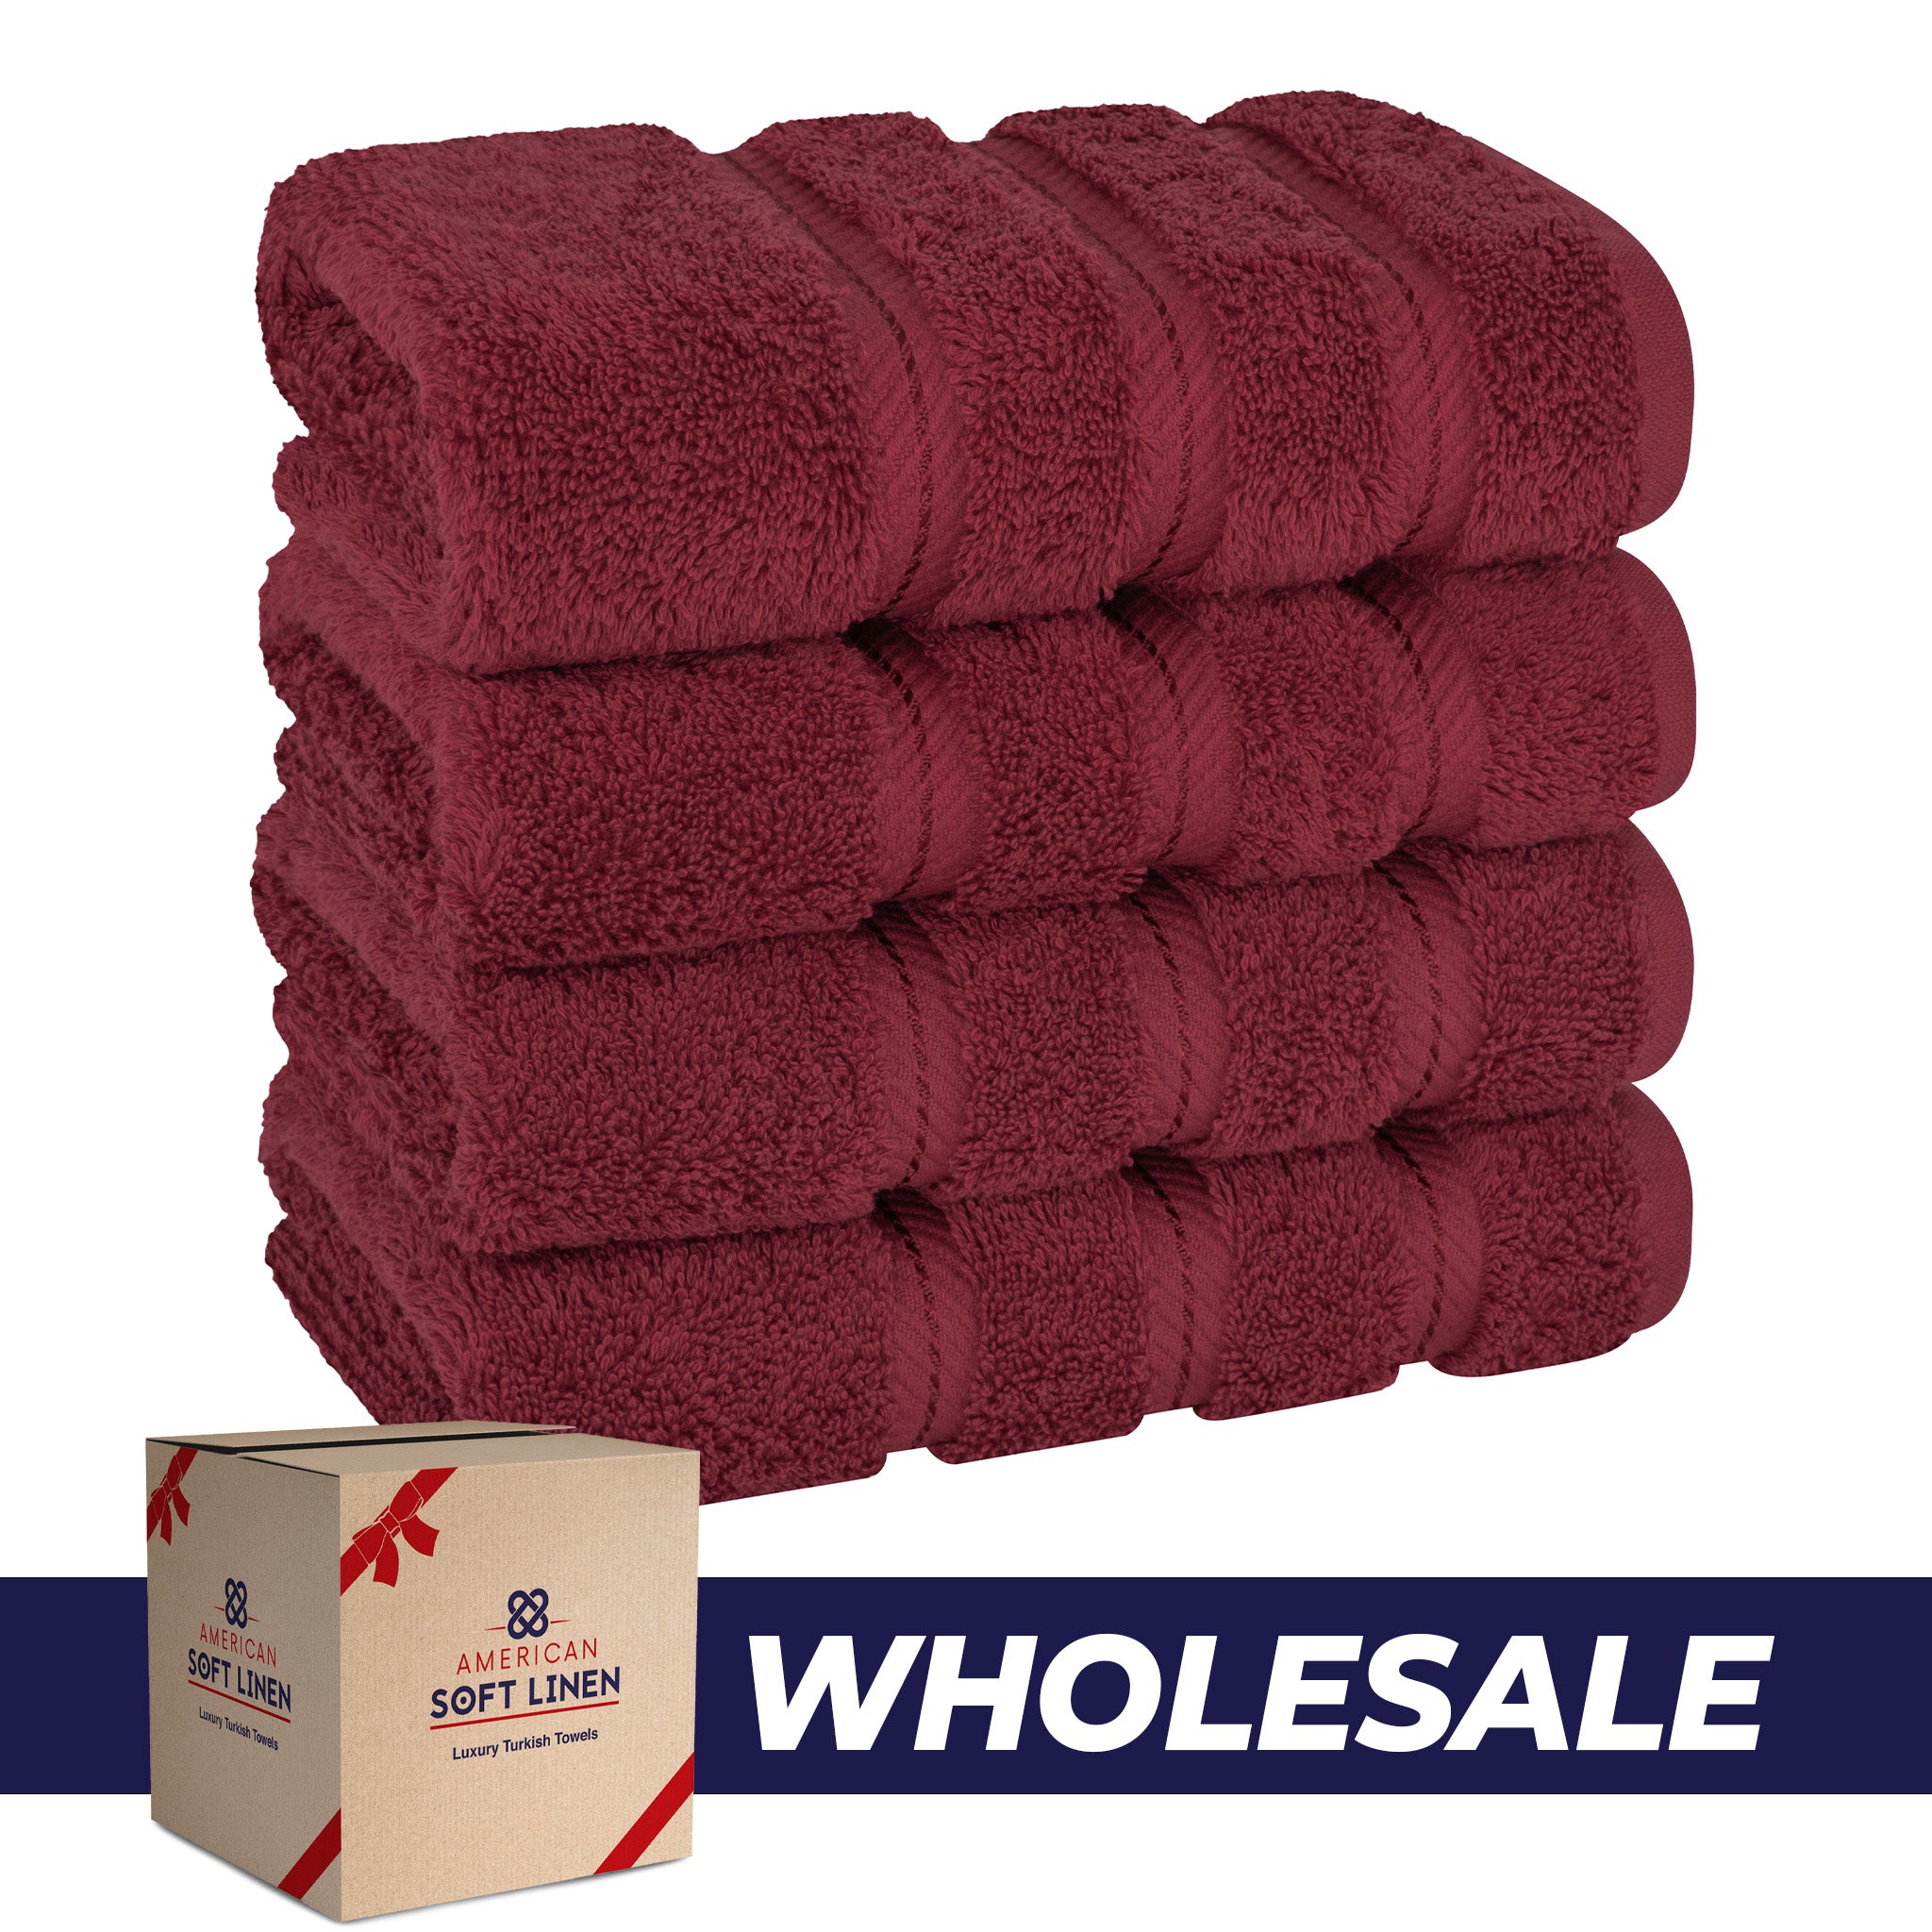 American Soft Linen 100% Turkish Cotton 4 Pack Hand Towel Set Wholesale bordeaux-red-0